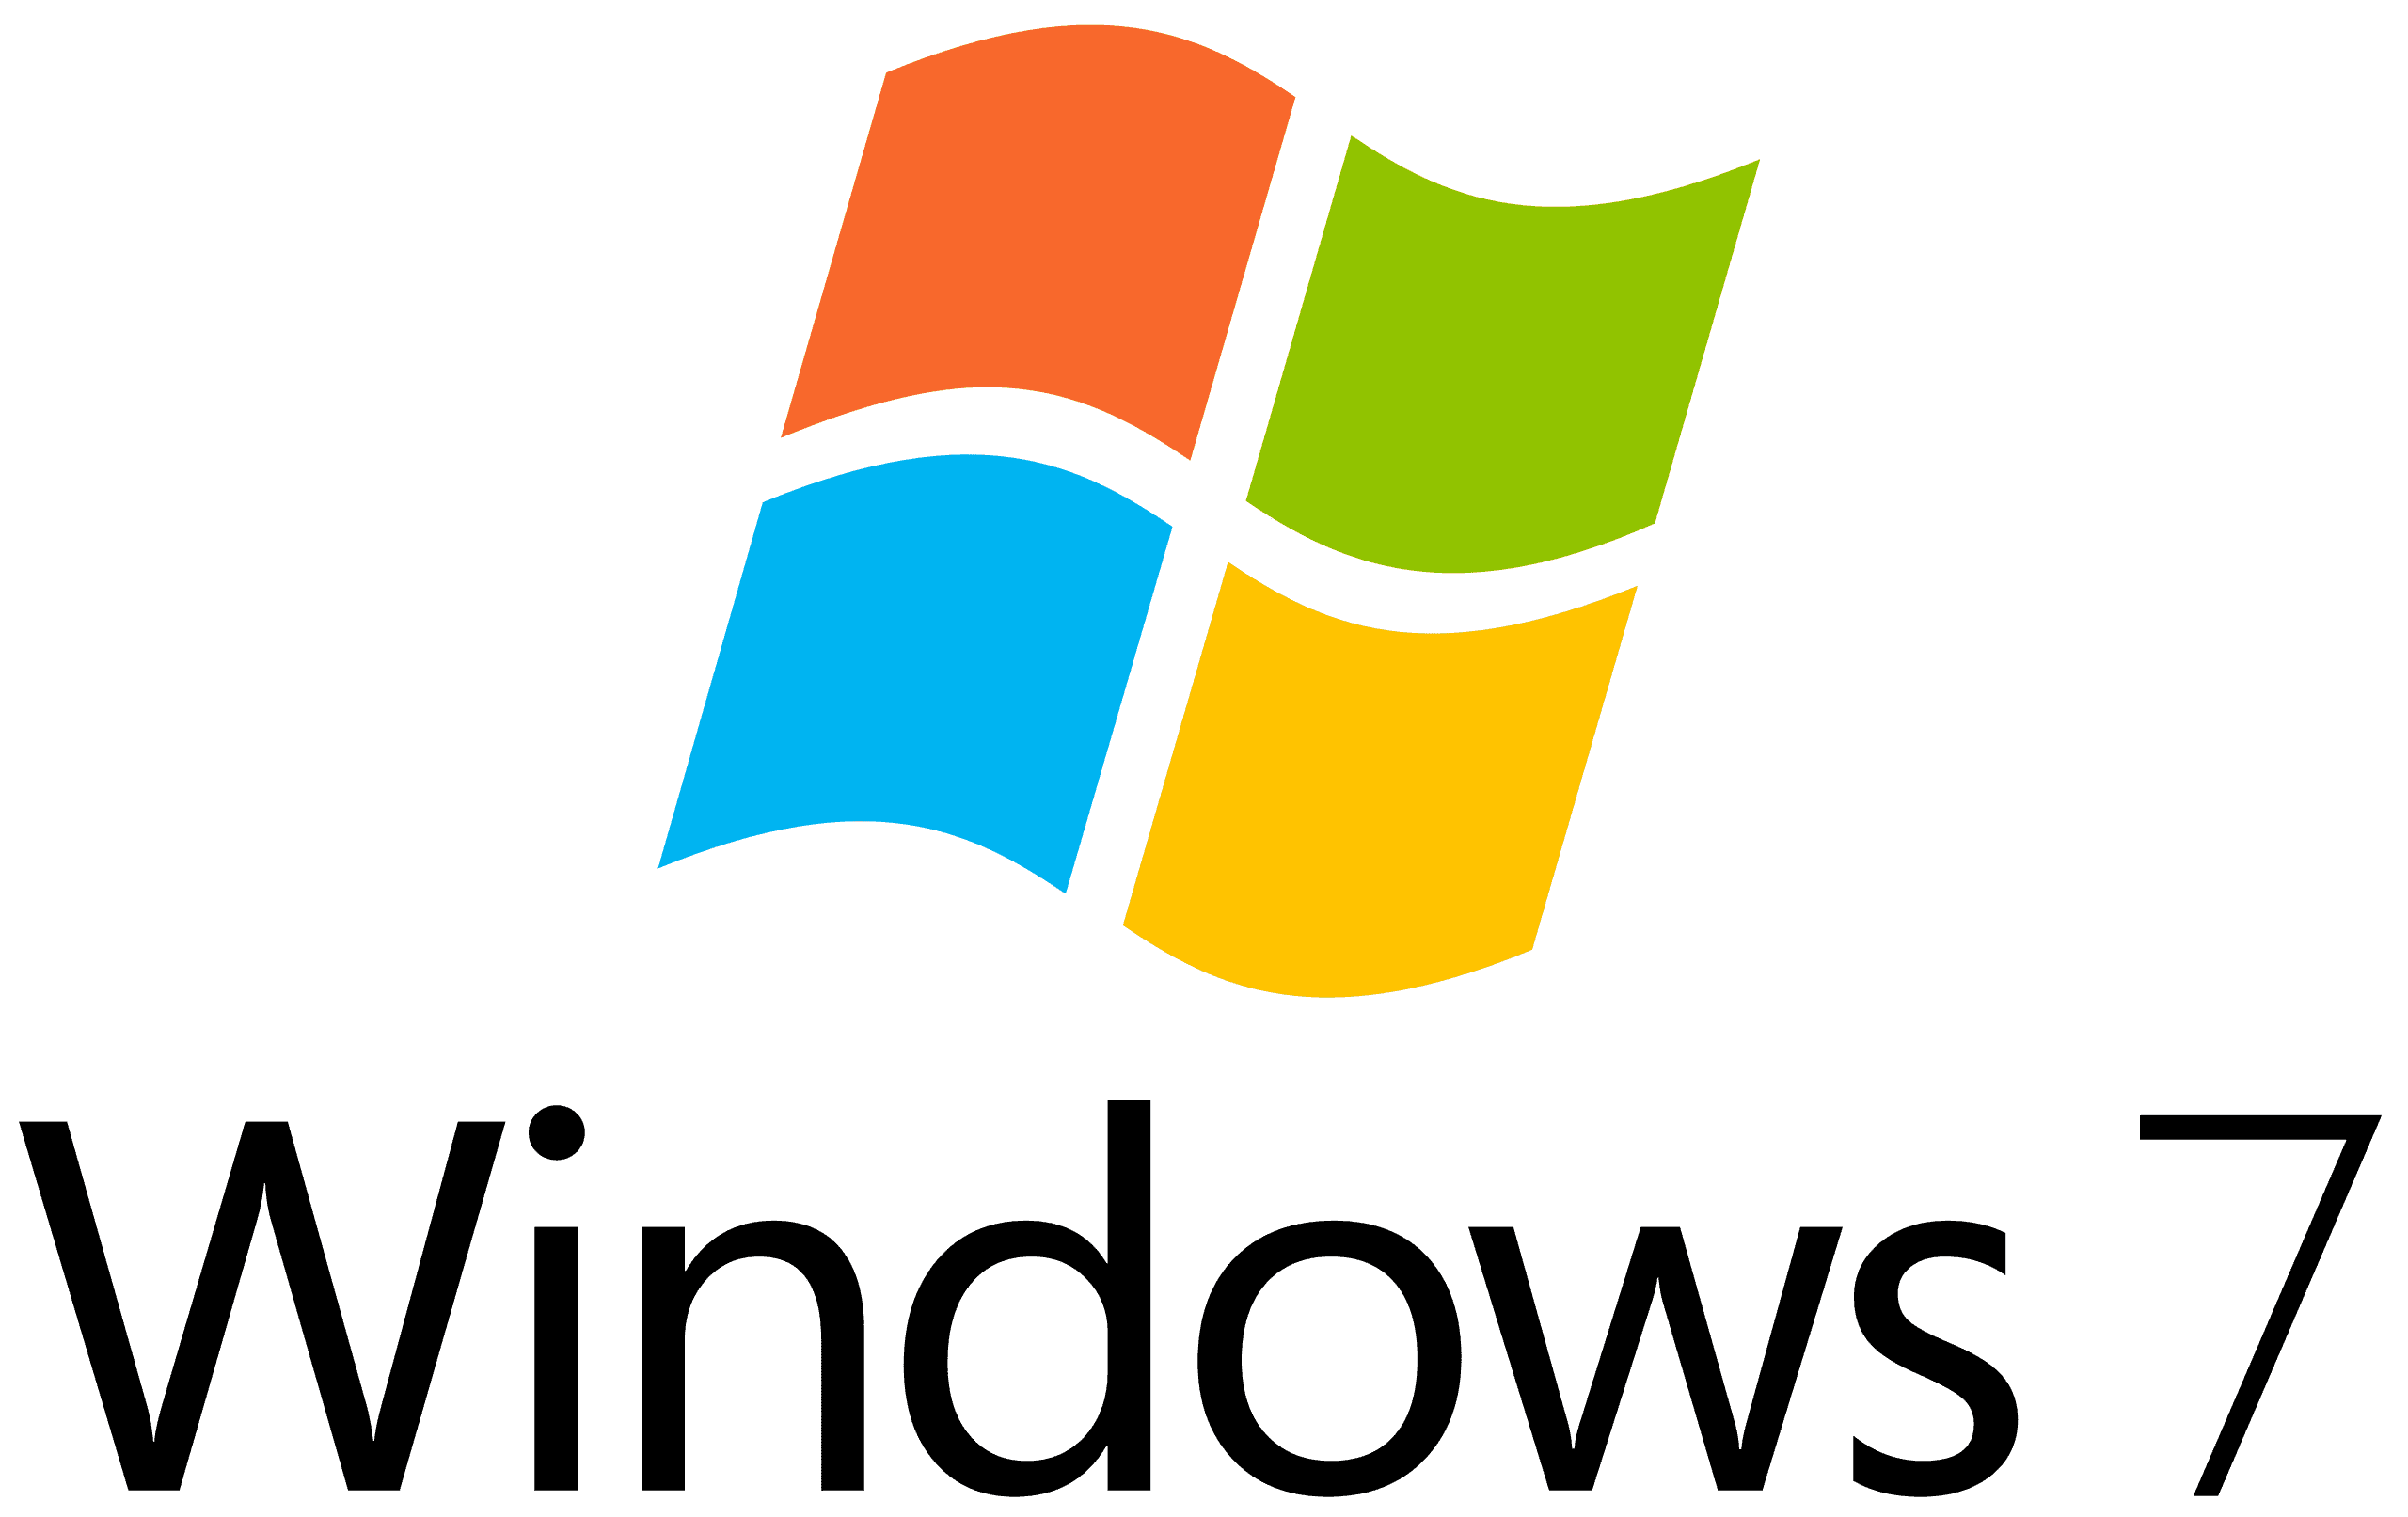 Microsoft sẽ kết thúc các bản cập nhật bảo mật mở rộng của Windows 7 vào thứ Ba tuần này